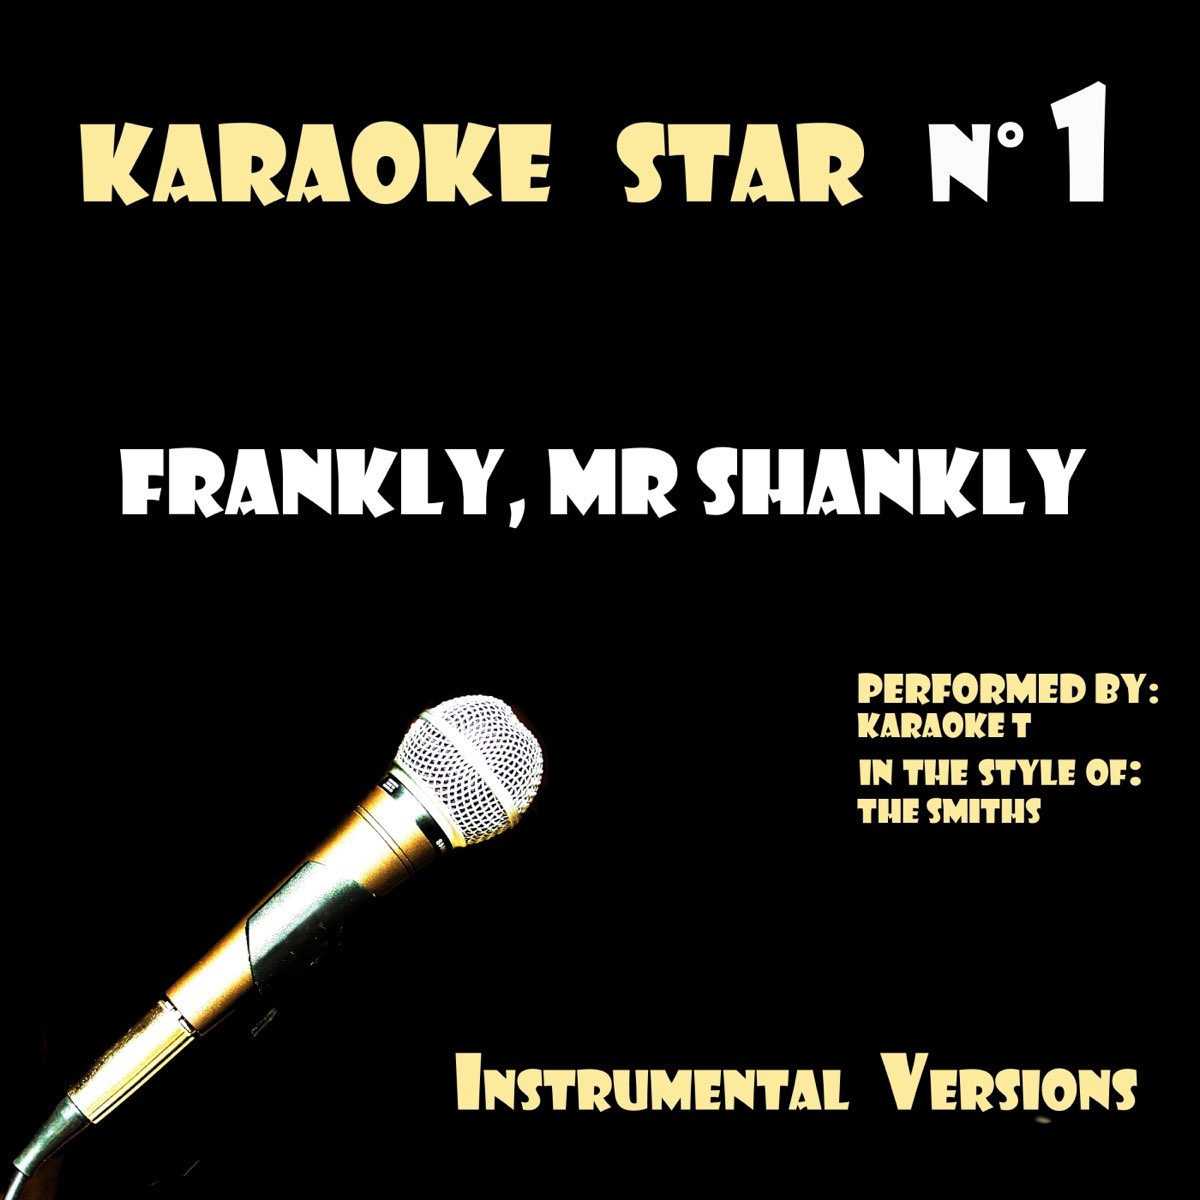 Frankly, Mr Shankly (in the style of The Smiths) [Karaoké Versions] -  Single de Karaoke T en Apple Music